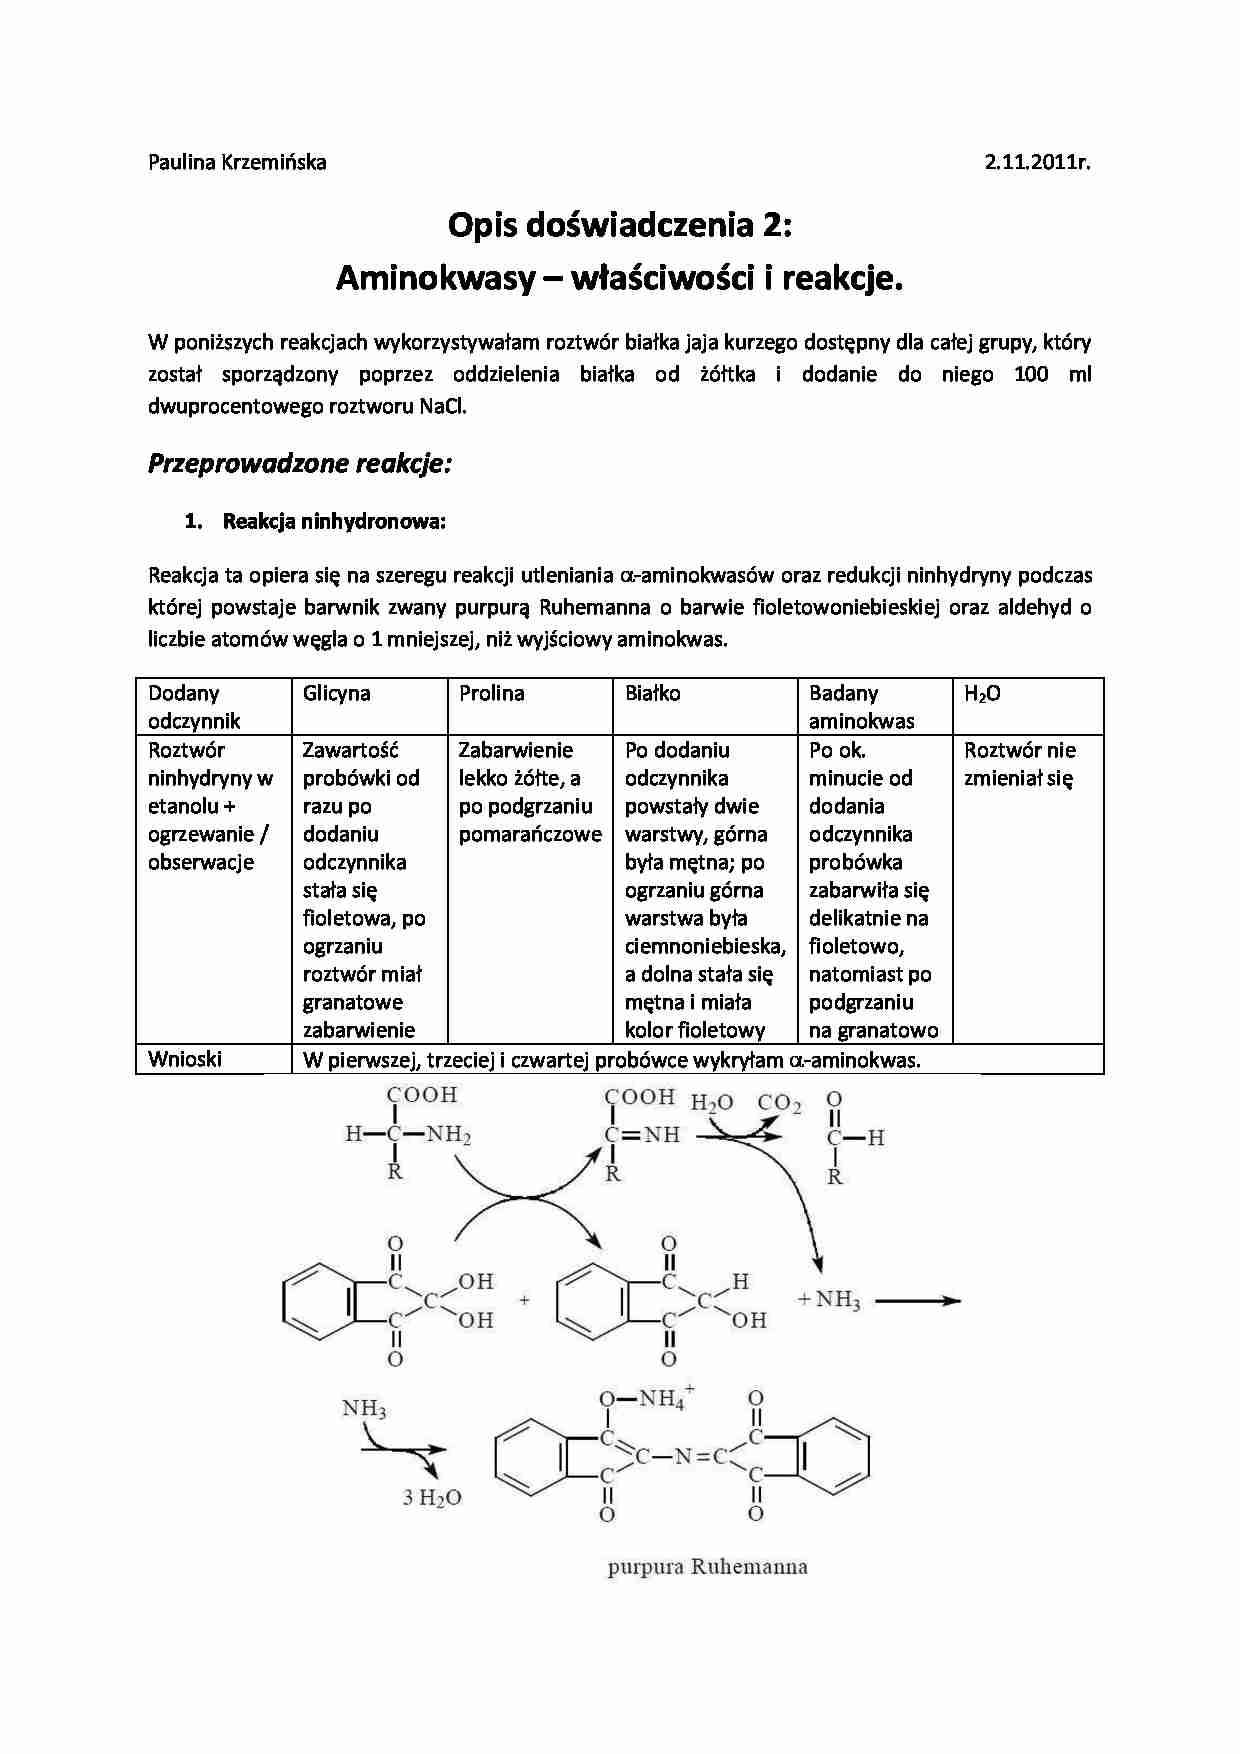 Aminokwasy - właściwości i reakcje - strona 1